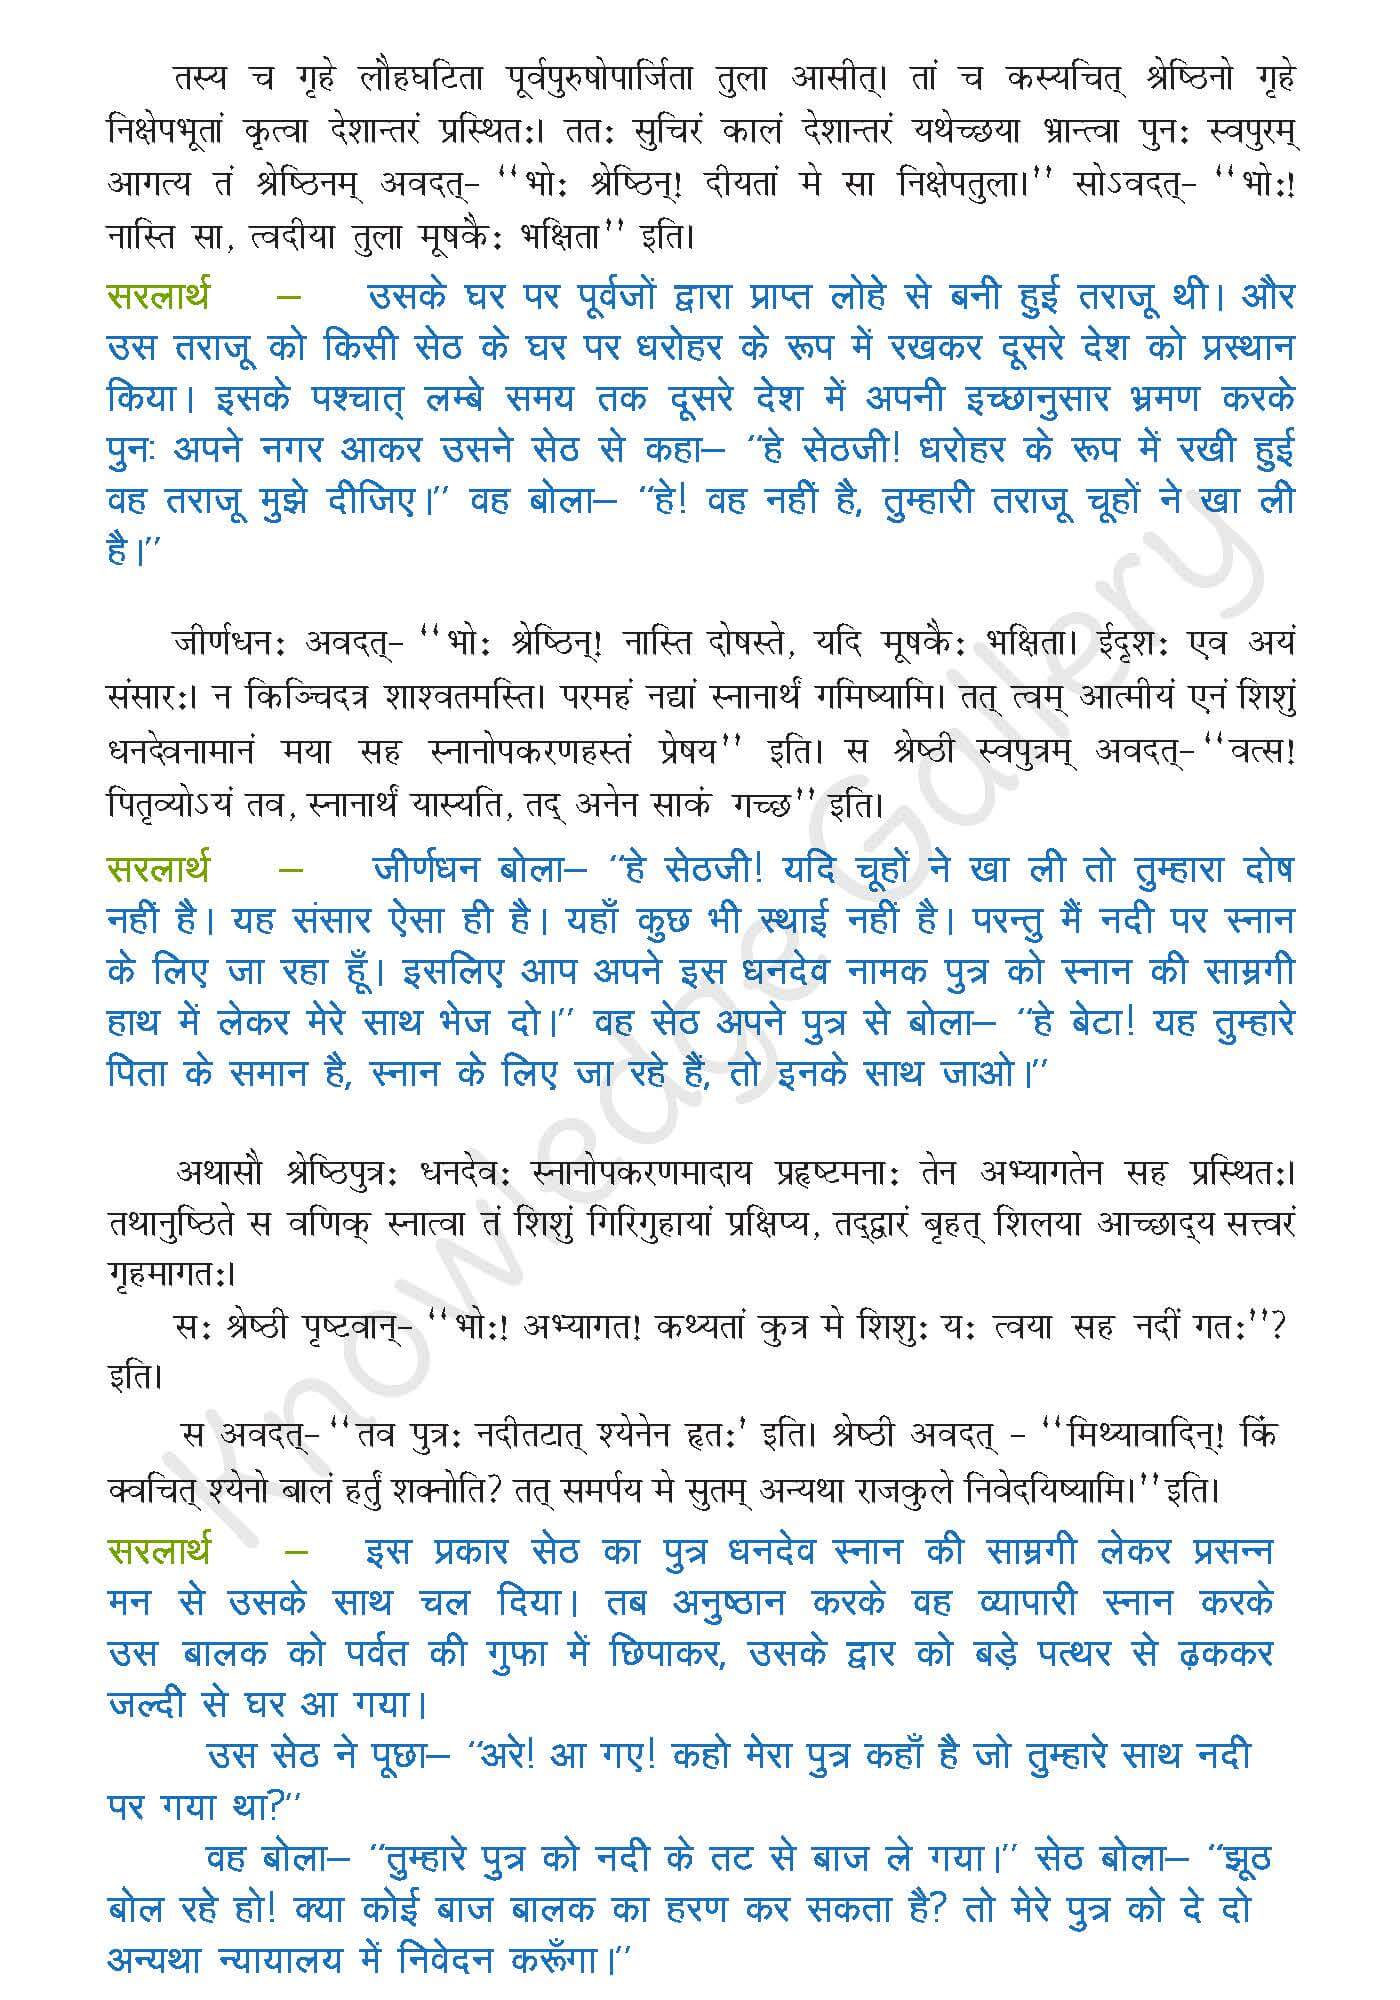 NCERT Solution For Class 9 Sanskrit Chapter 6 part 2